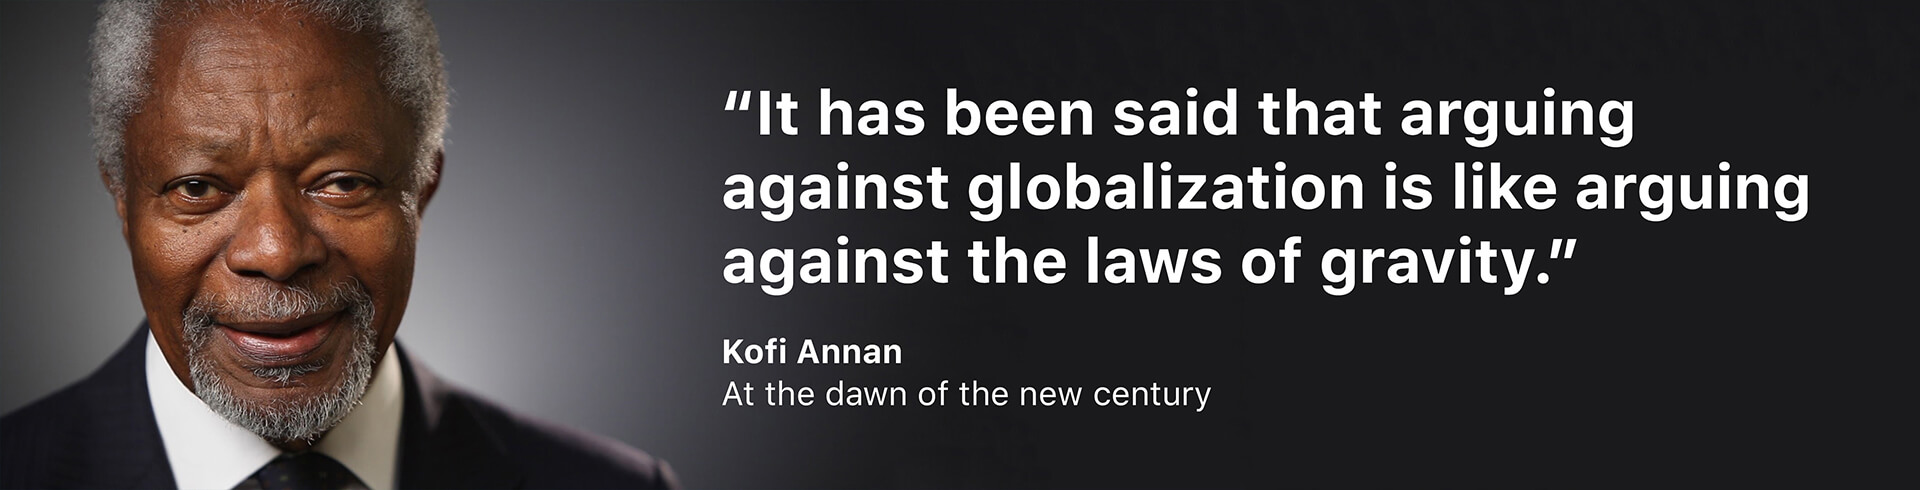 Kofi Annan's quote